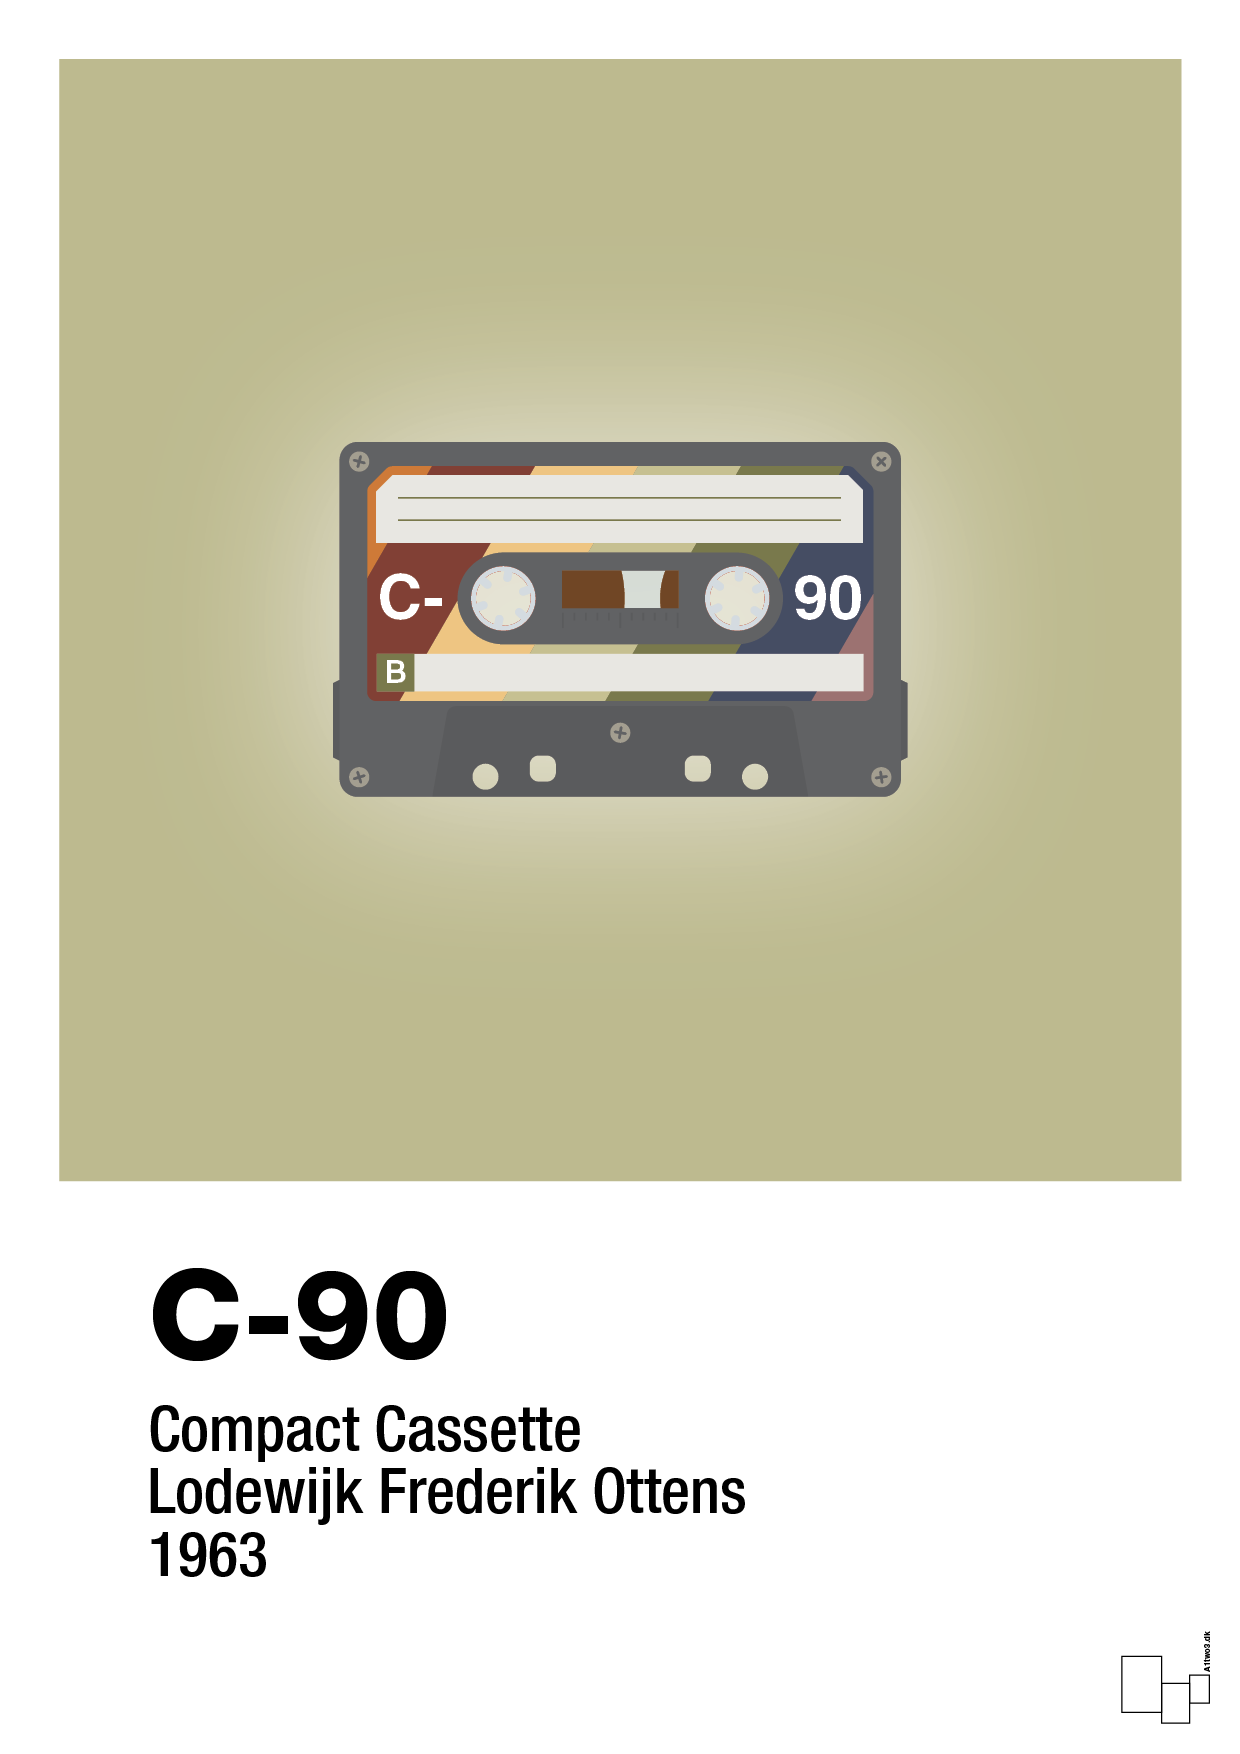 kassettebånd c-90 - Plakat med Grafik i Back to Nature